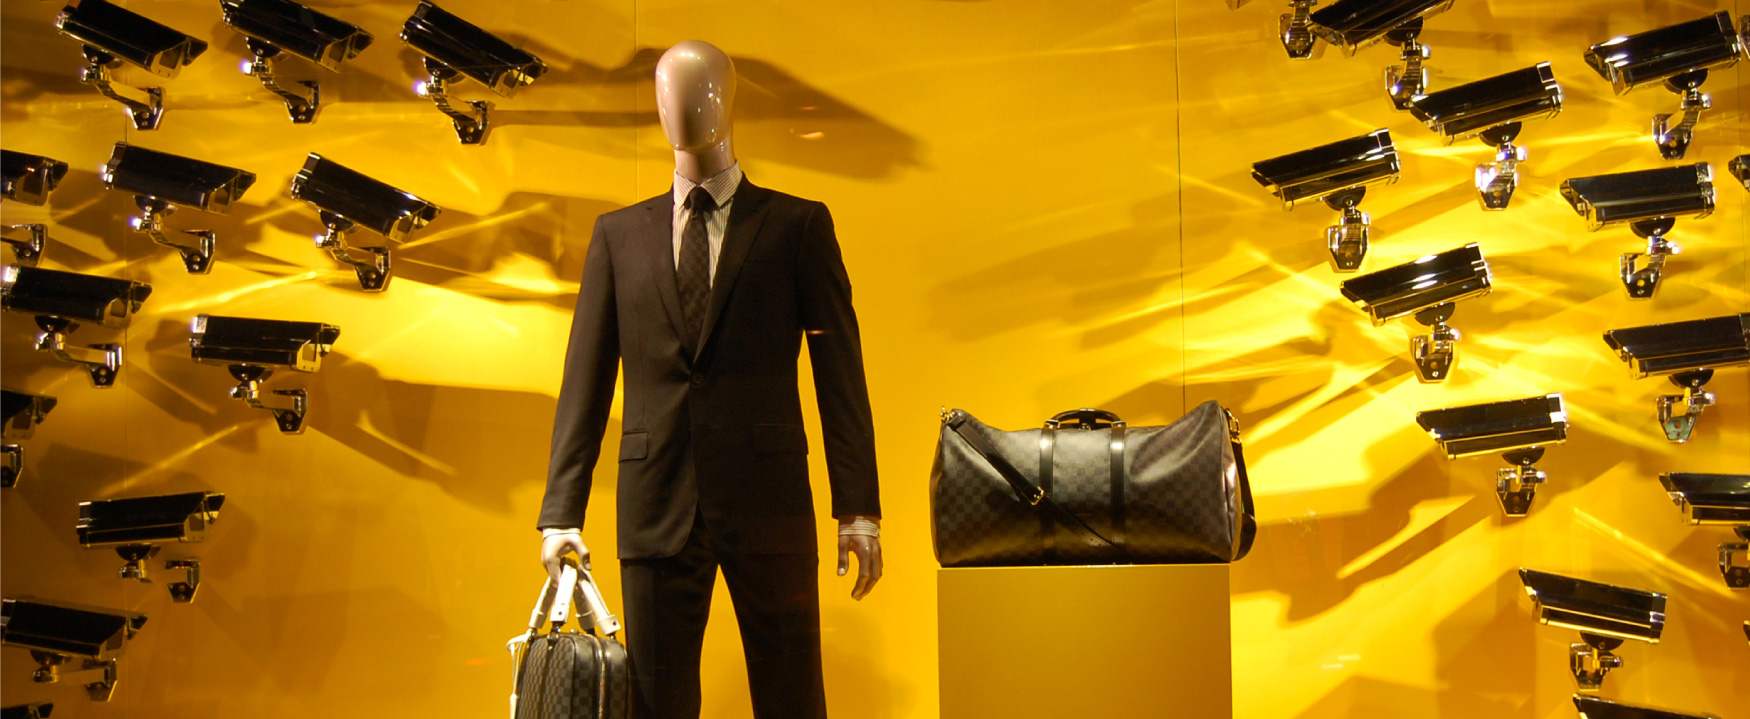 Uma tela mostra um manequim vestido com um traje de negócios, segurando uma bolsa de grife, com uma segunda bolsa de grife em um pedestal ao lado. Na parede atrás do manequim estão dezenas de câmeras de segurança apontadas para ele e as bolsas.